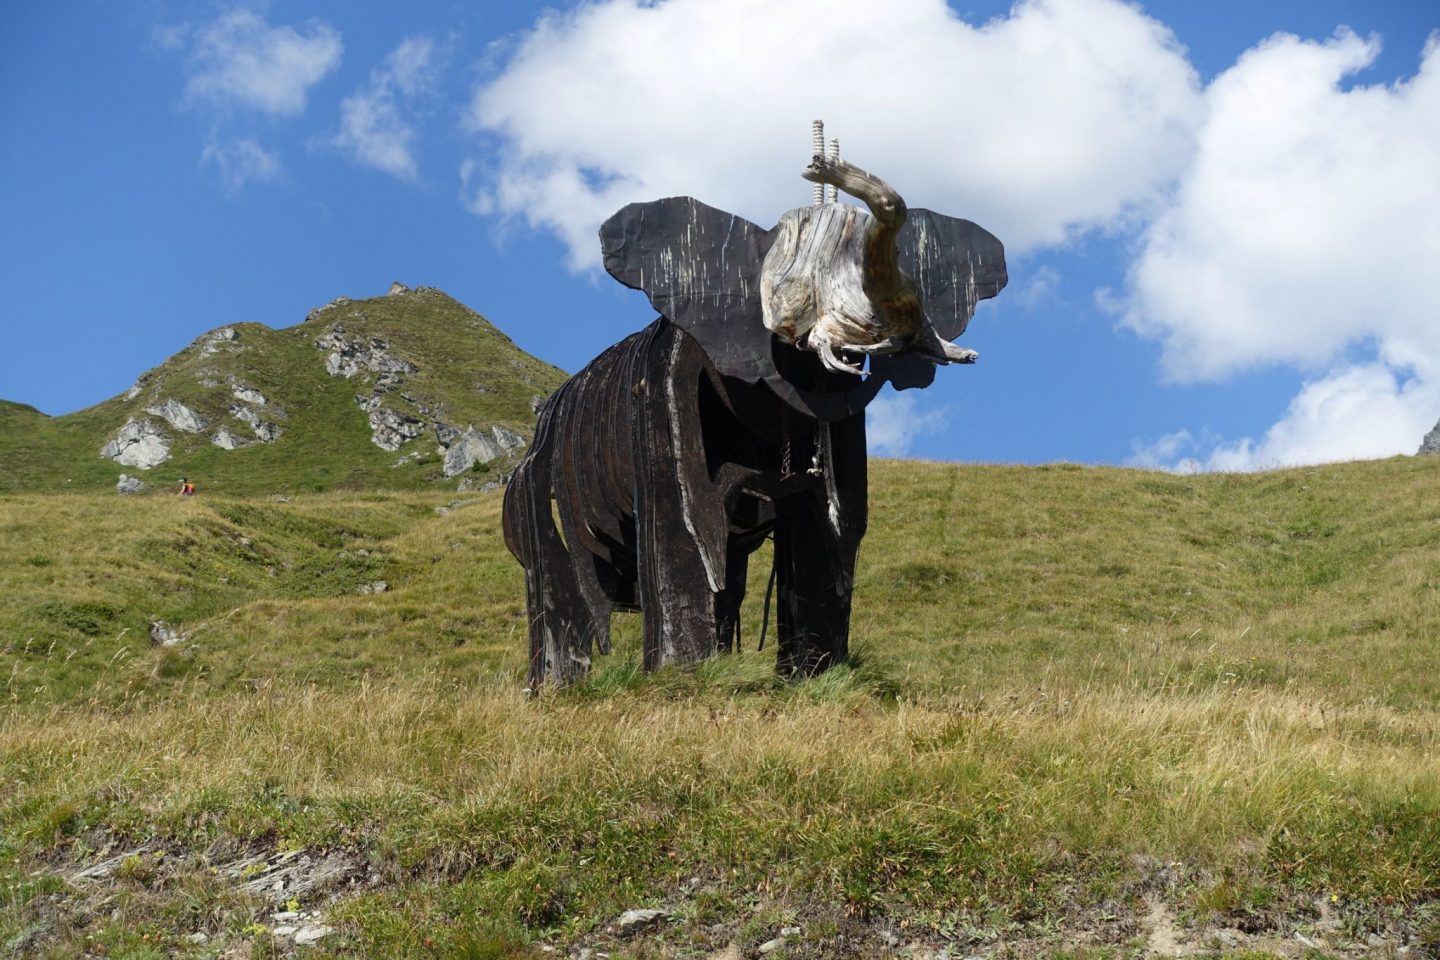 Elephant sculpture on the mont blanc to matterhorn trek